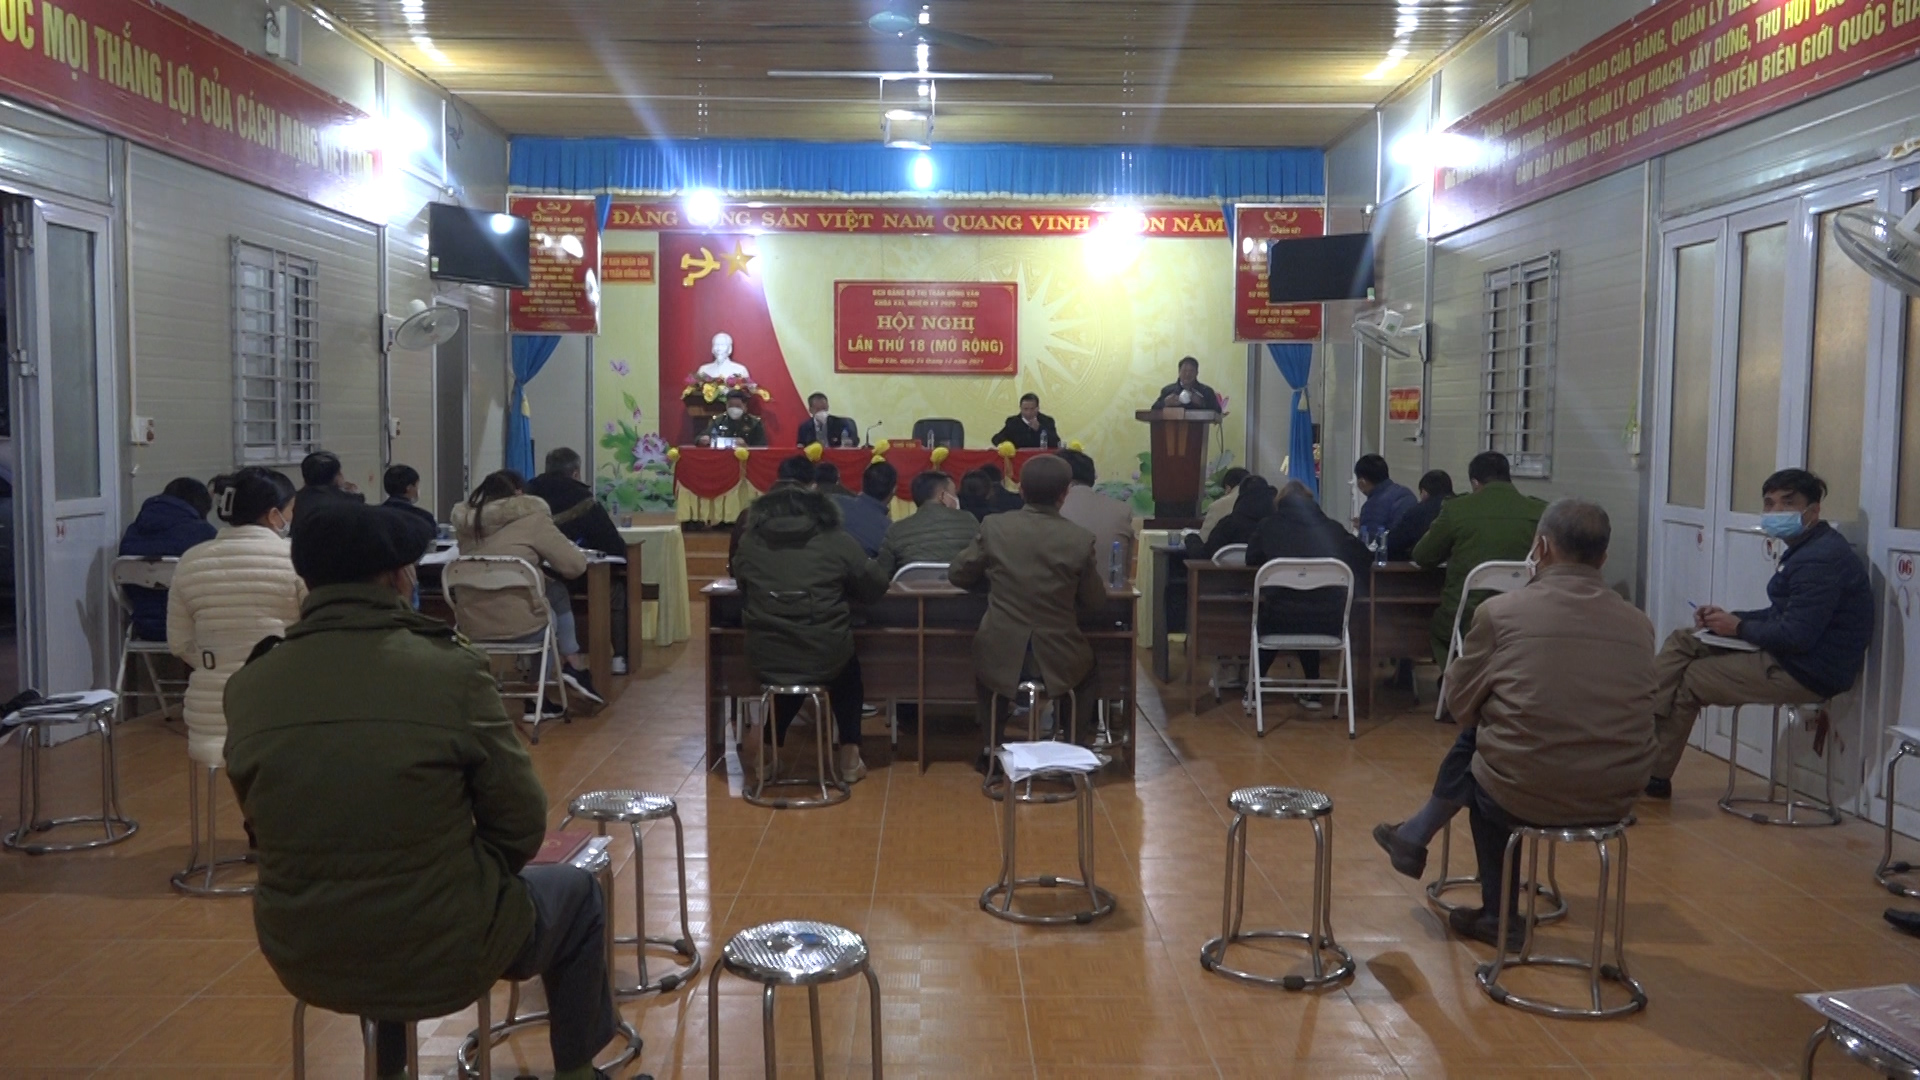 Hội nghị lần thứ 18 Ban Chấp Hành Đảng bộ Thị trấn Đồng Văn mở rộng khóa XIX nhiệm kỳ 2020 - 2025